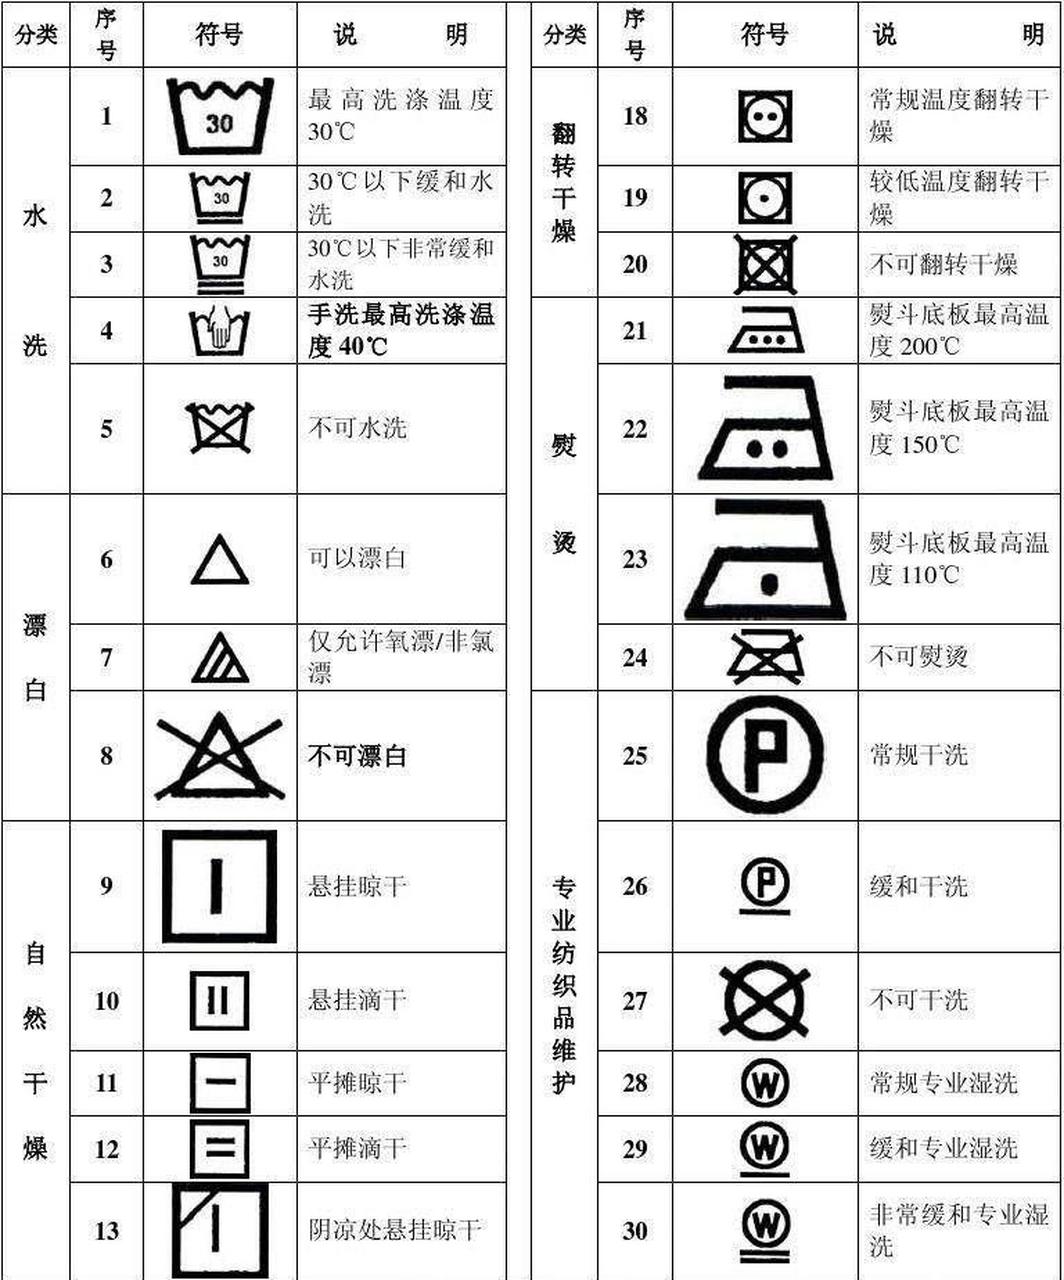 洗衣标志图解中文图片